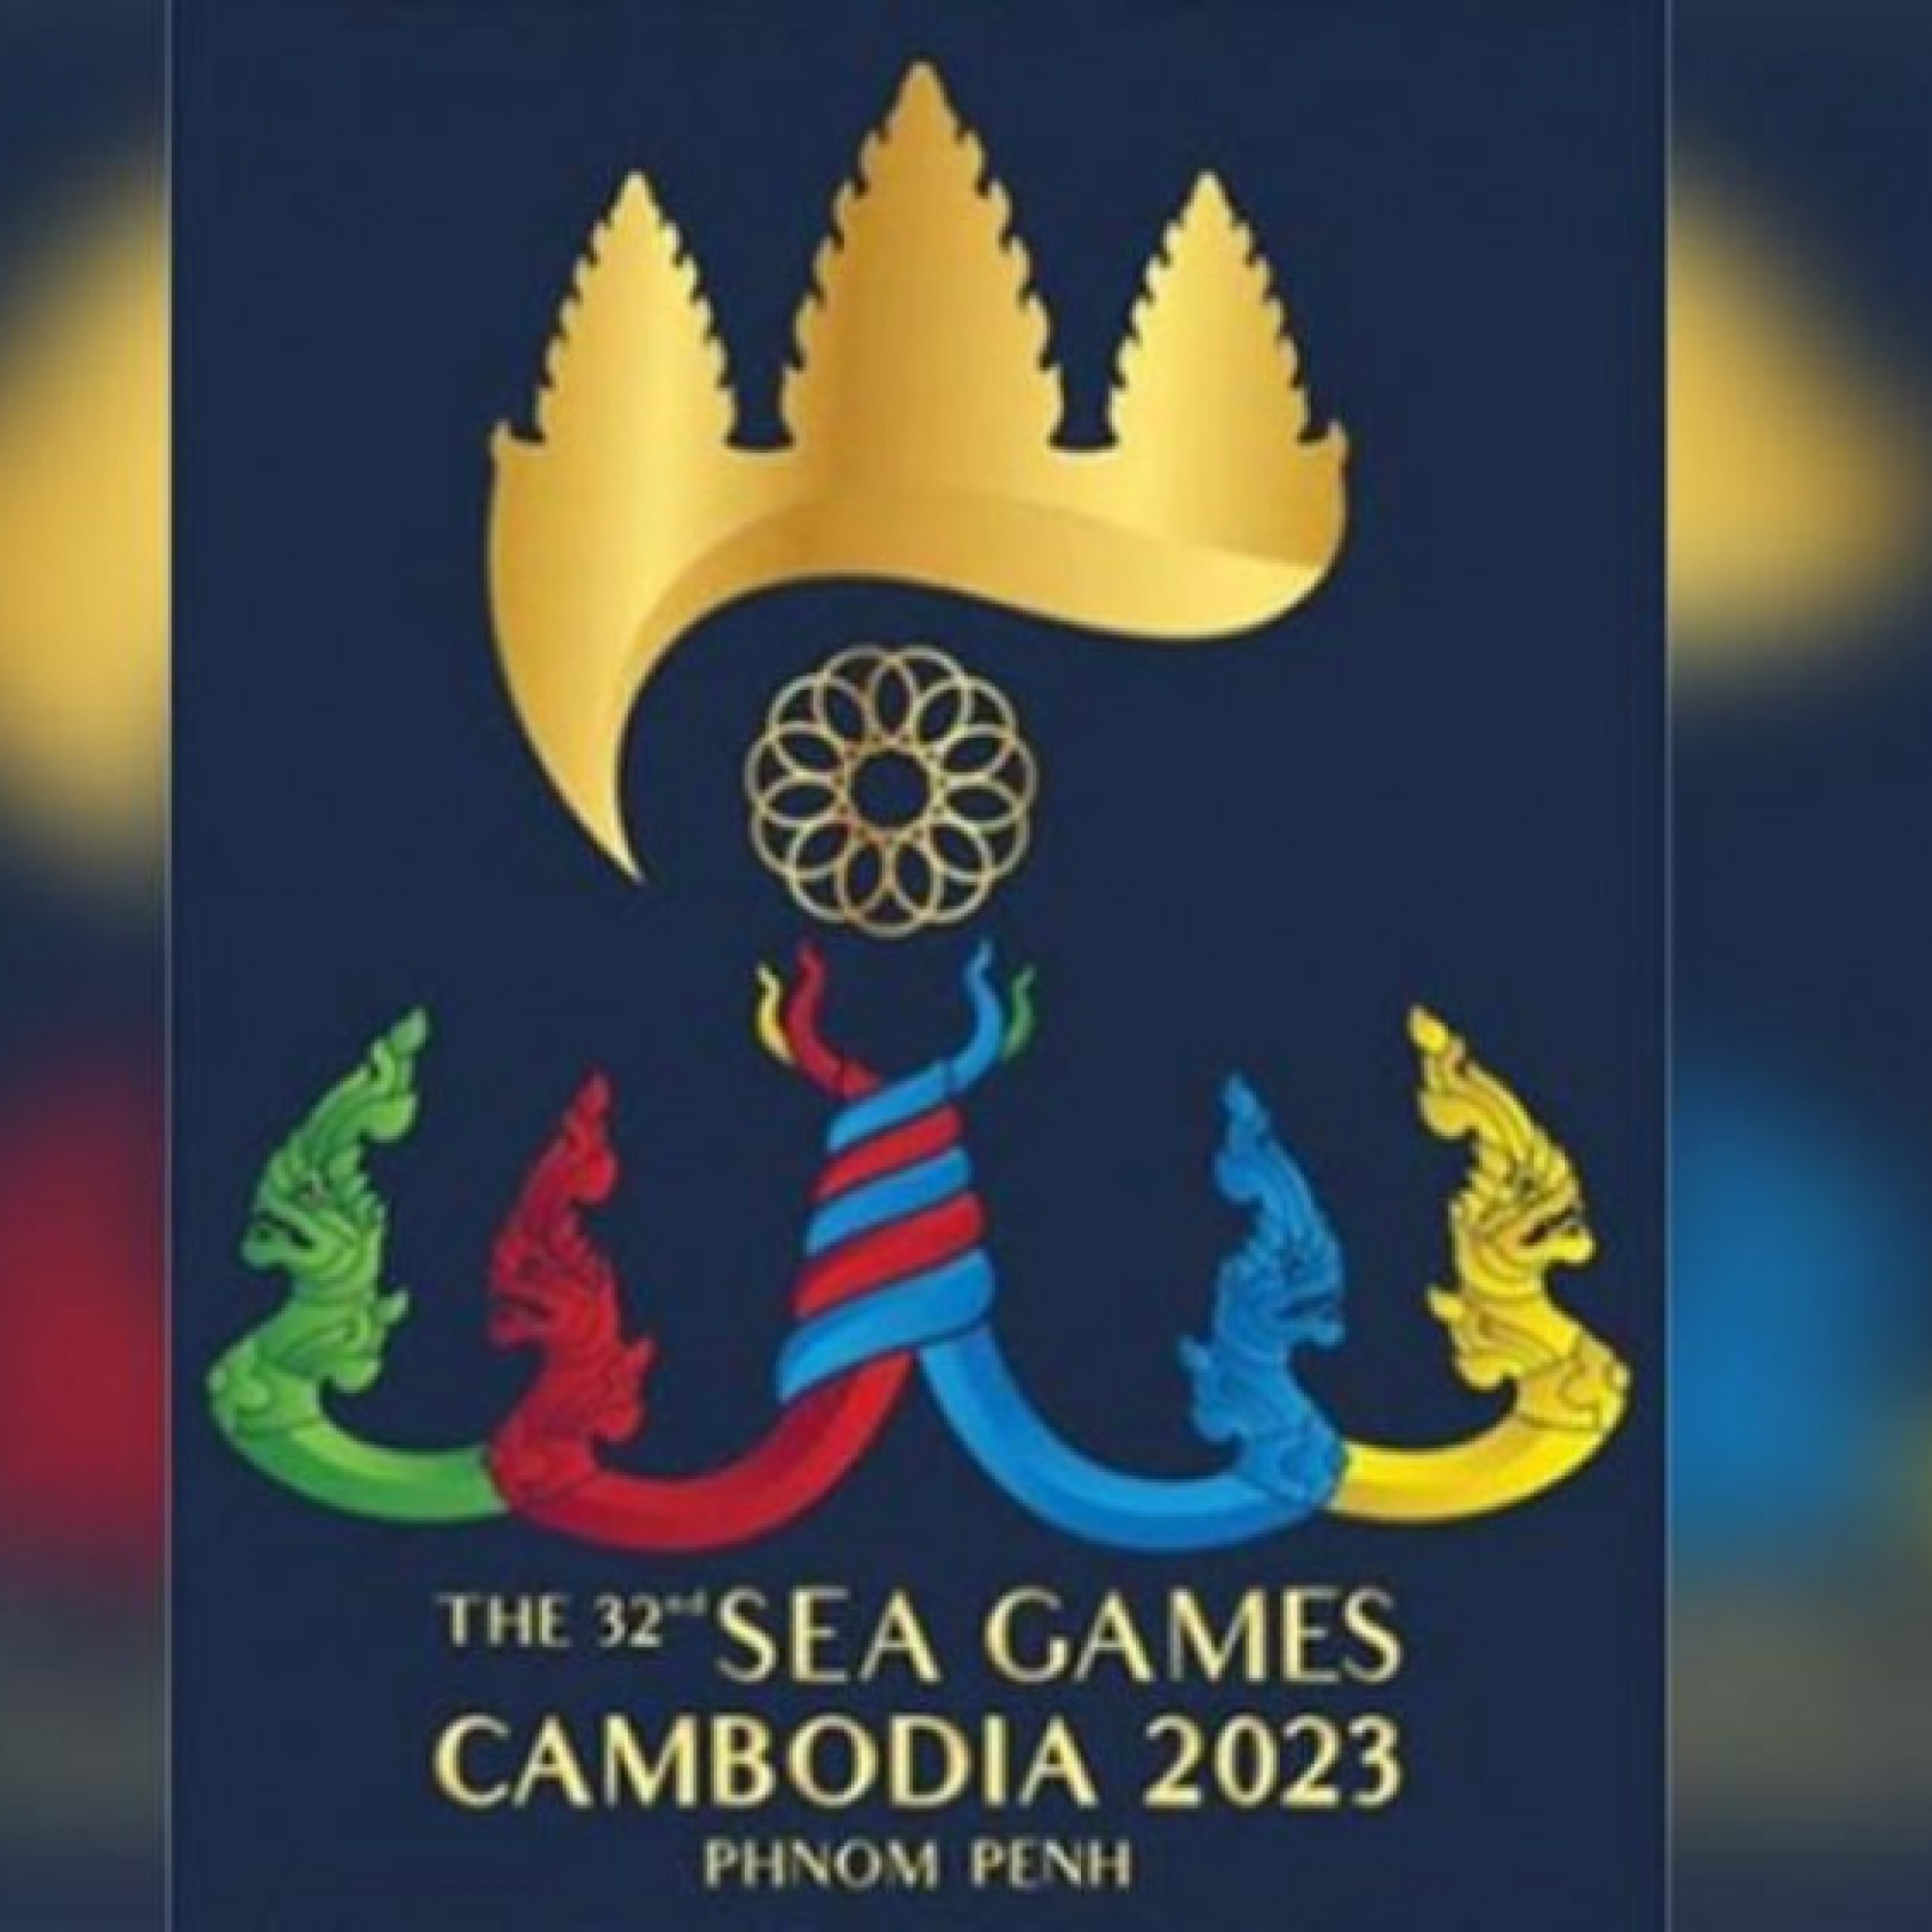 Thể thao - Lịch thi đấu các môn thể thao SEA Games 32 tại Campuchia 2023 mới nhất